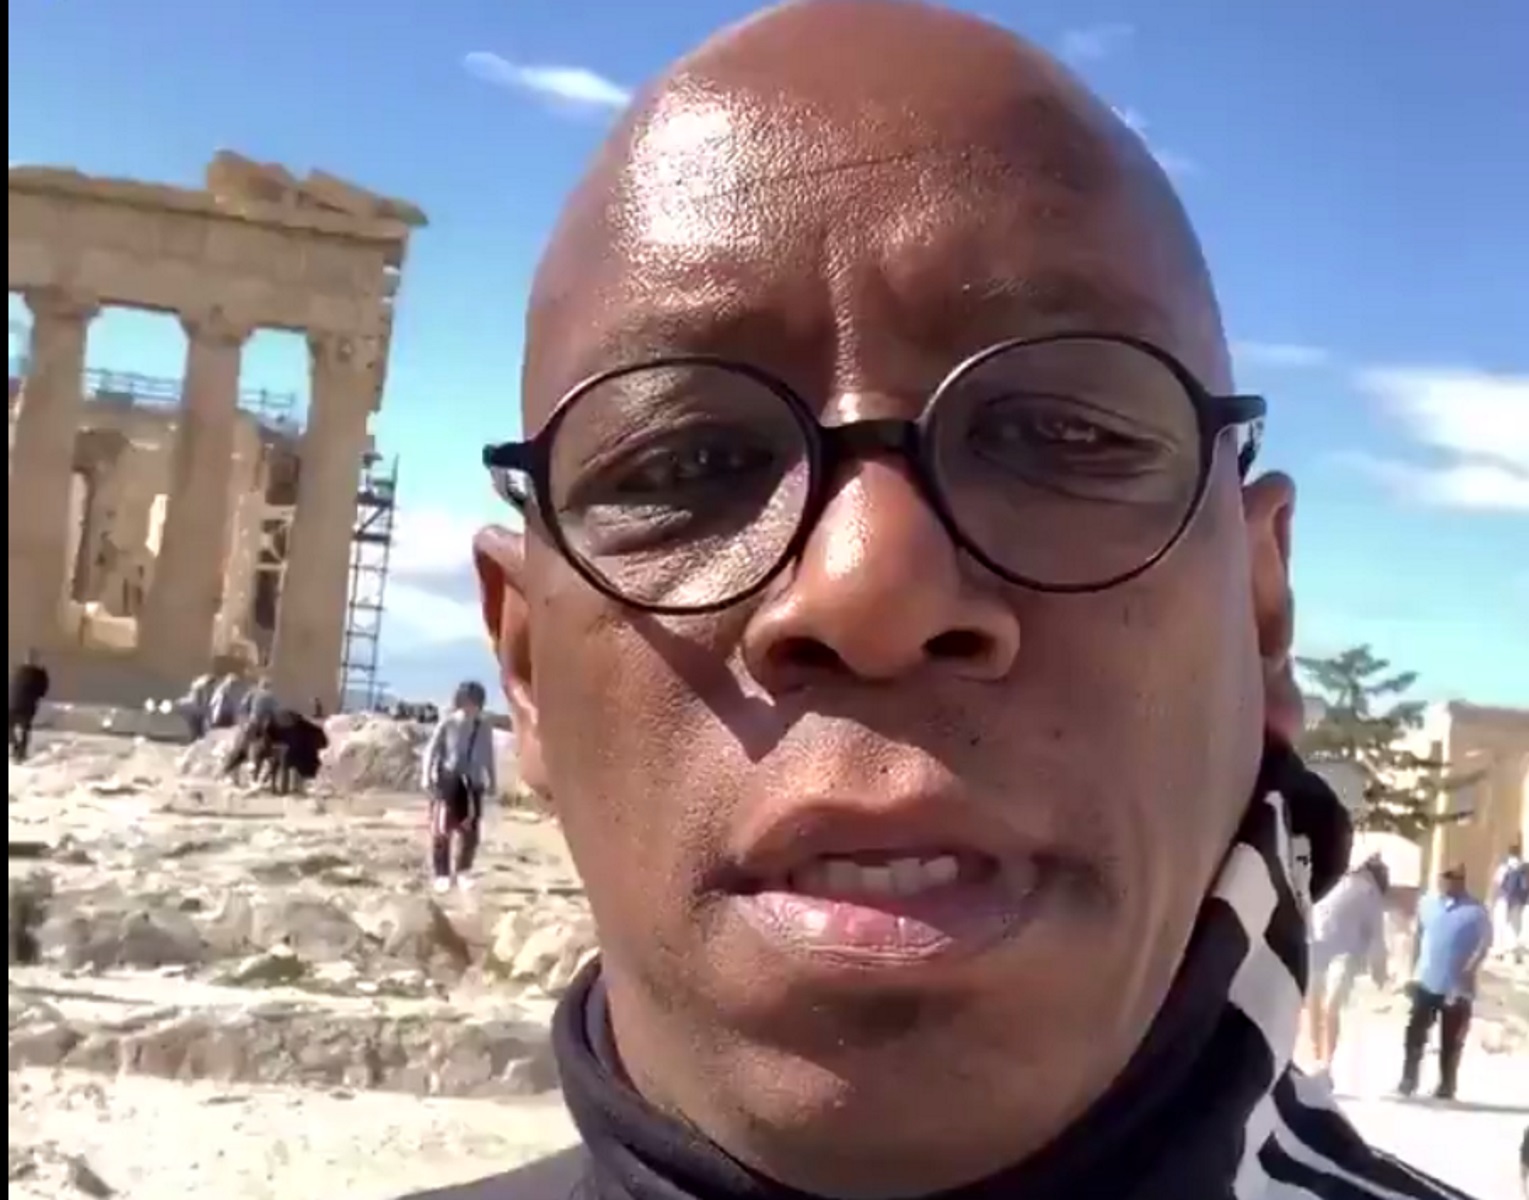 Ολυμπιακός – Άρσεναλ: Ο Ίαν Ράιτ έστειλε από την Ακρόπολη μήνυμα νίκης στους “κανονιέρηδες”! (video)